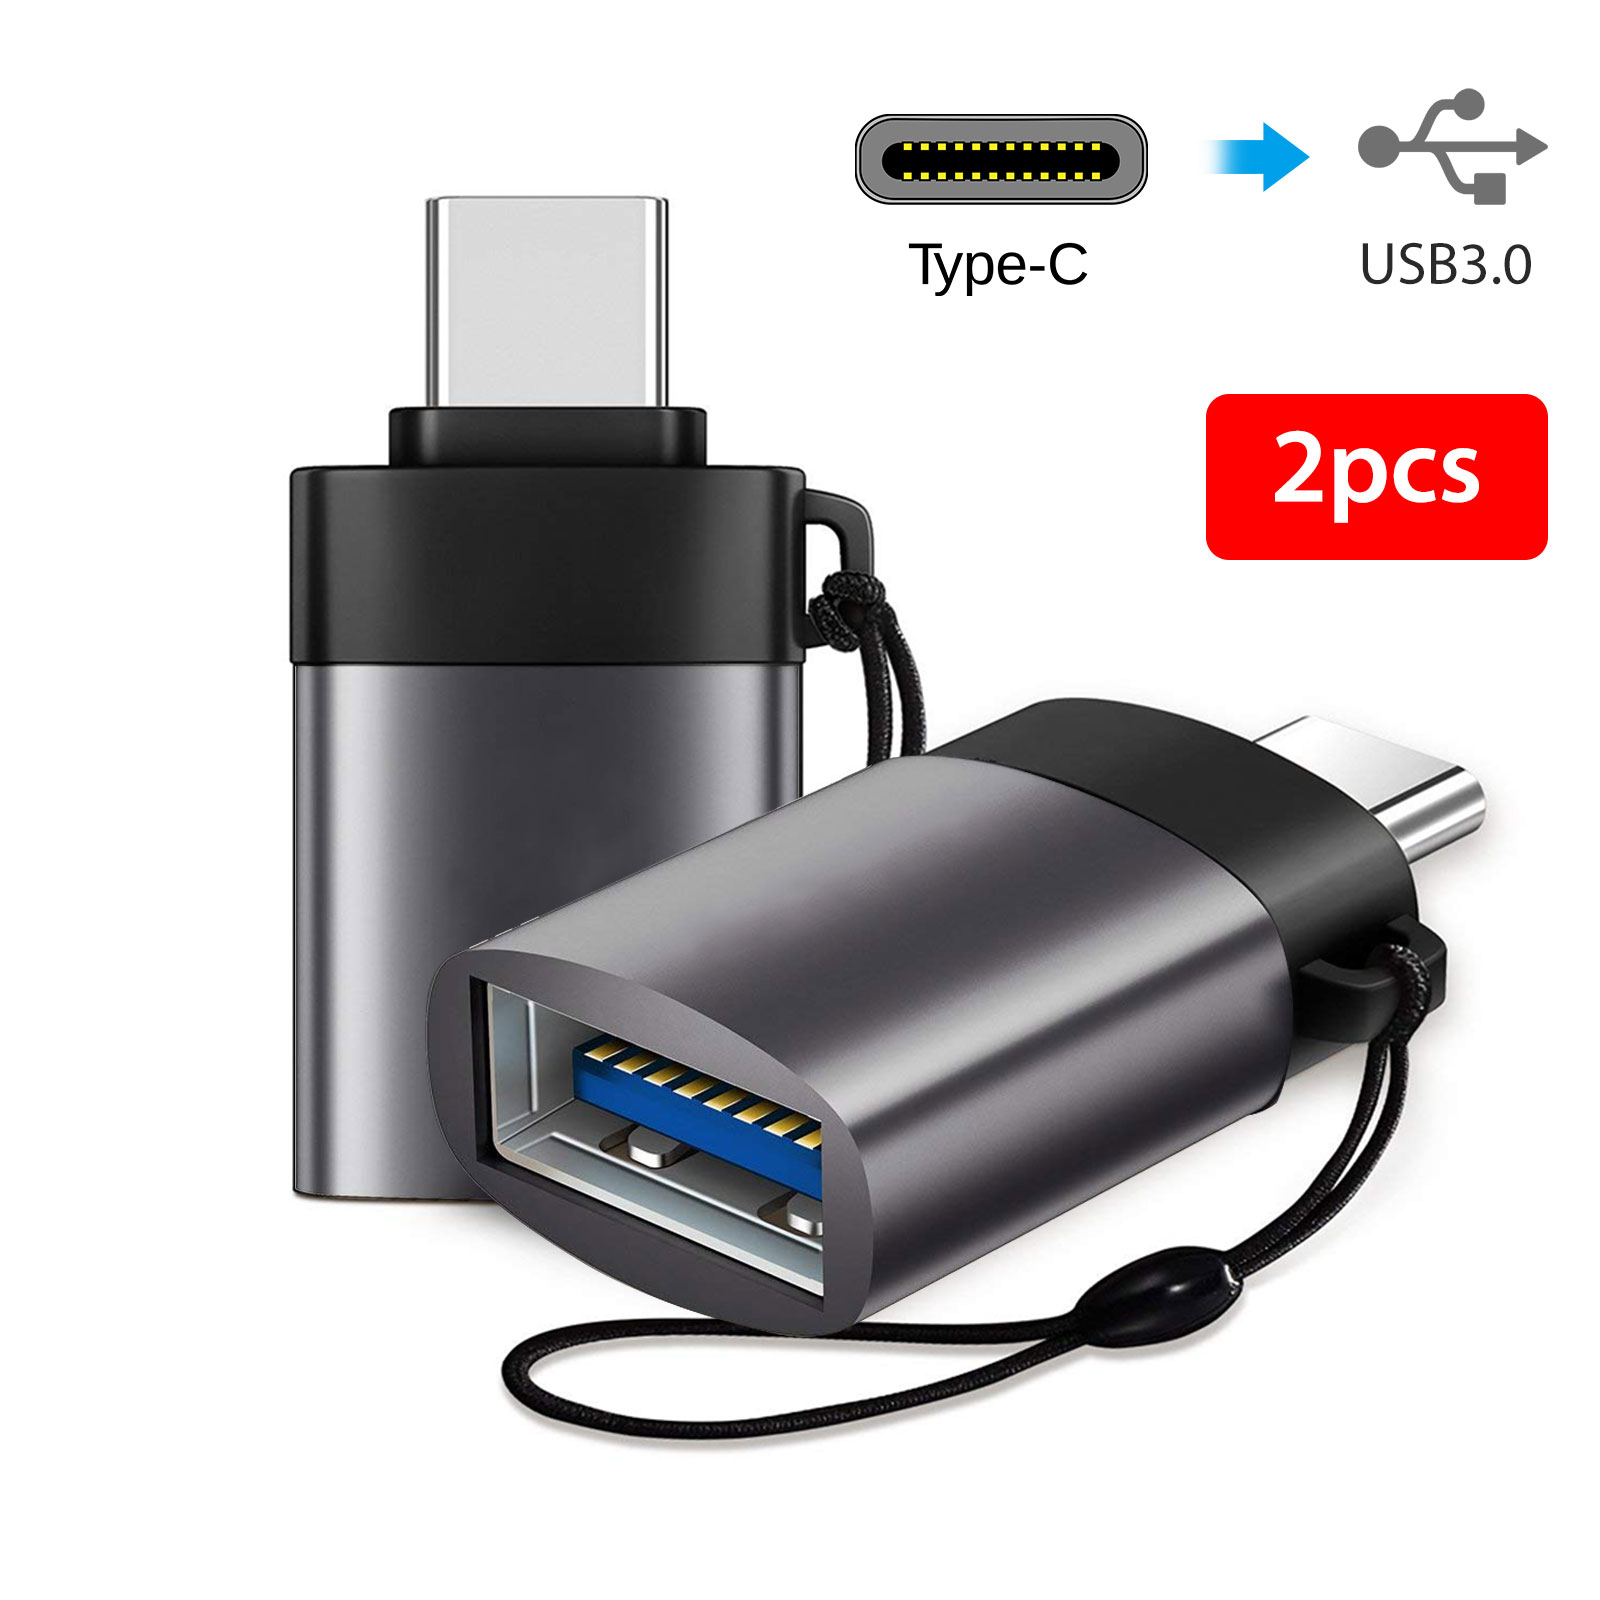 2pack USB C to USB 3.0 OTG Thunderbolt 3 Converter Adapter For Macbook Pro PC eBay